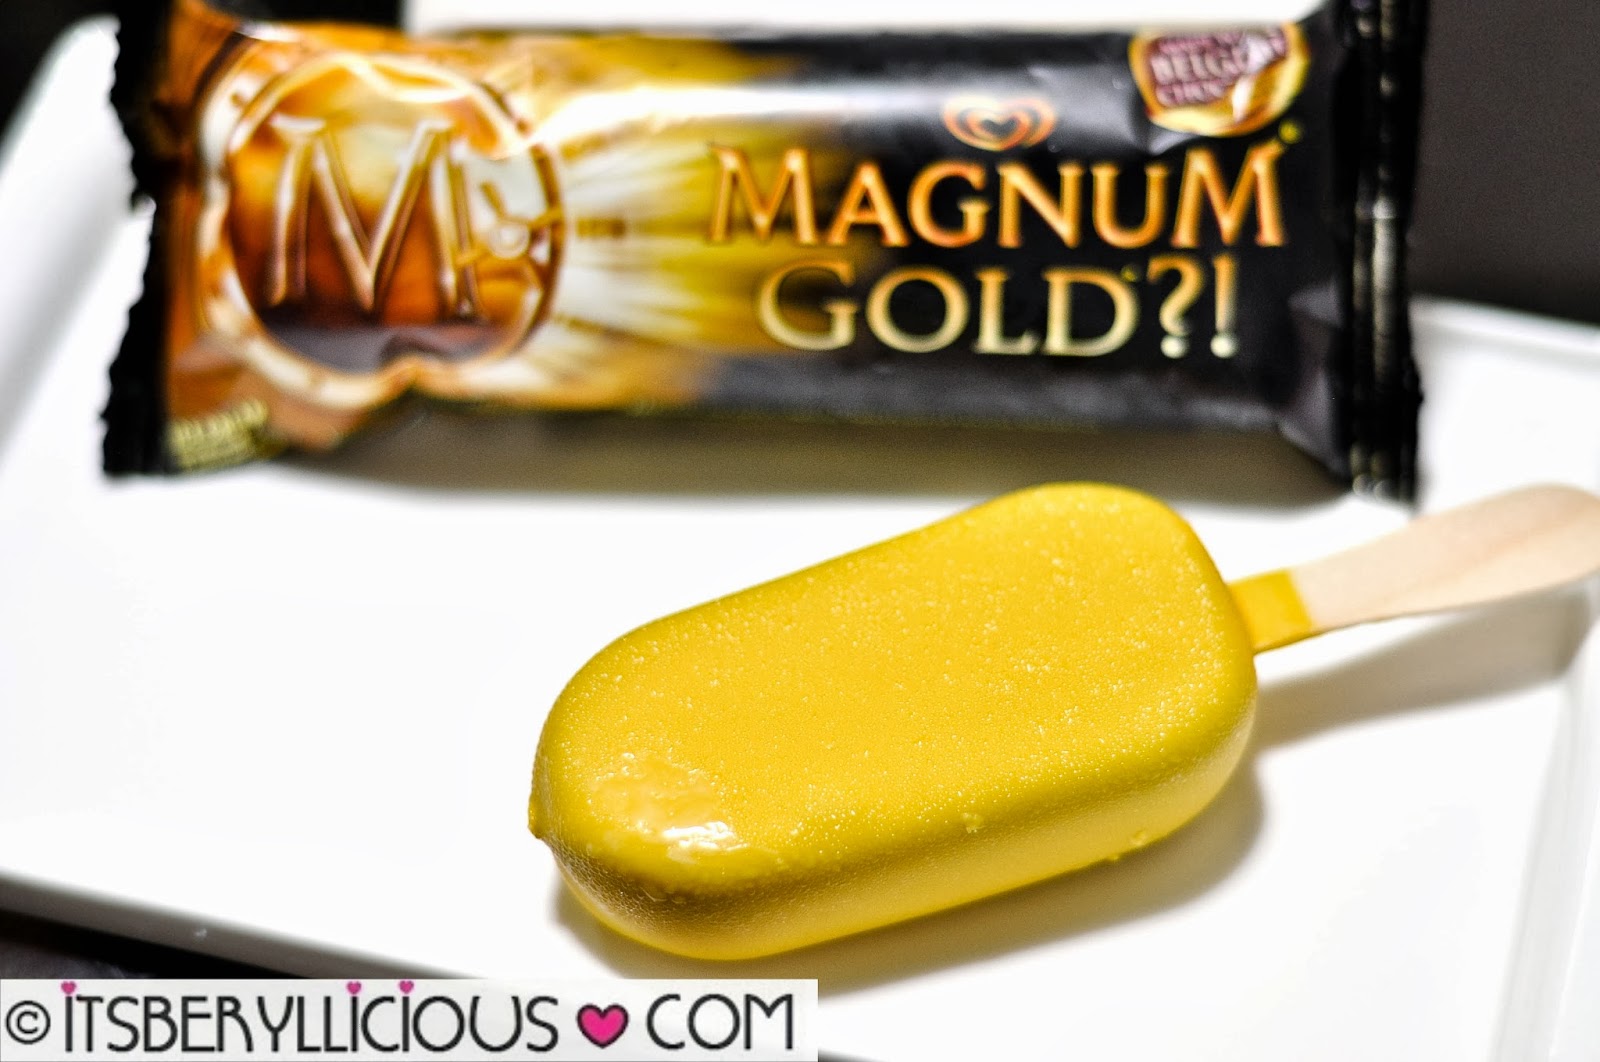 Magnum Gold?! 